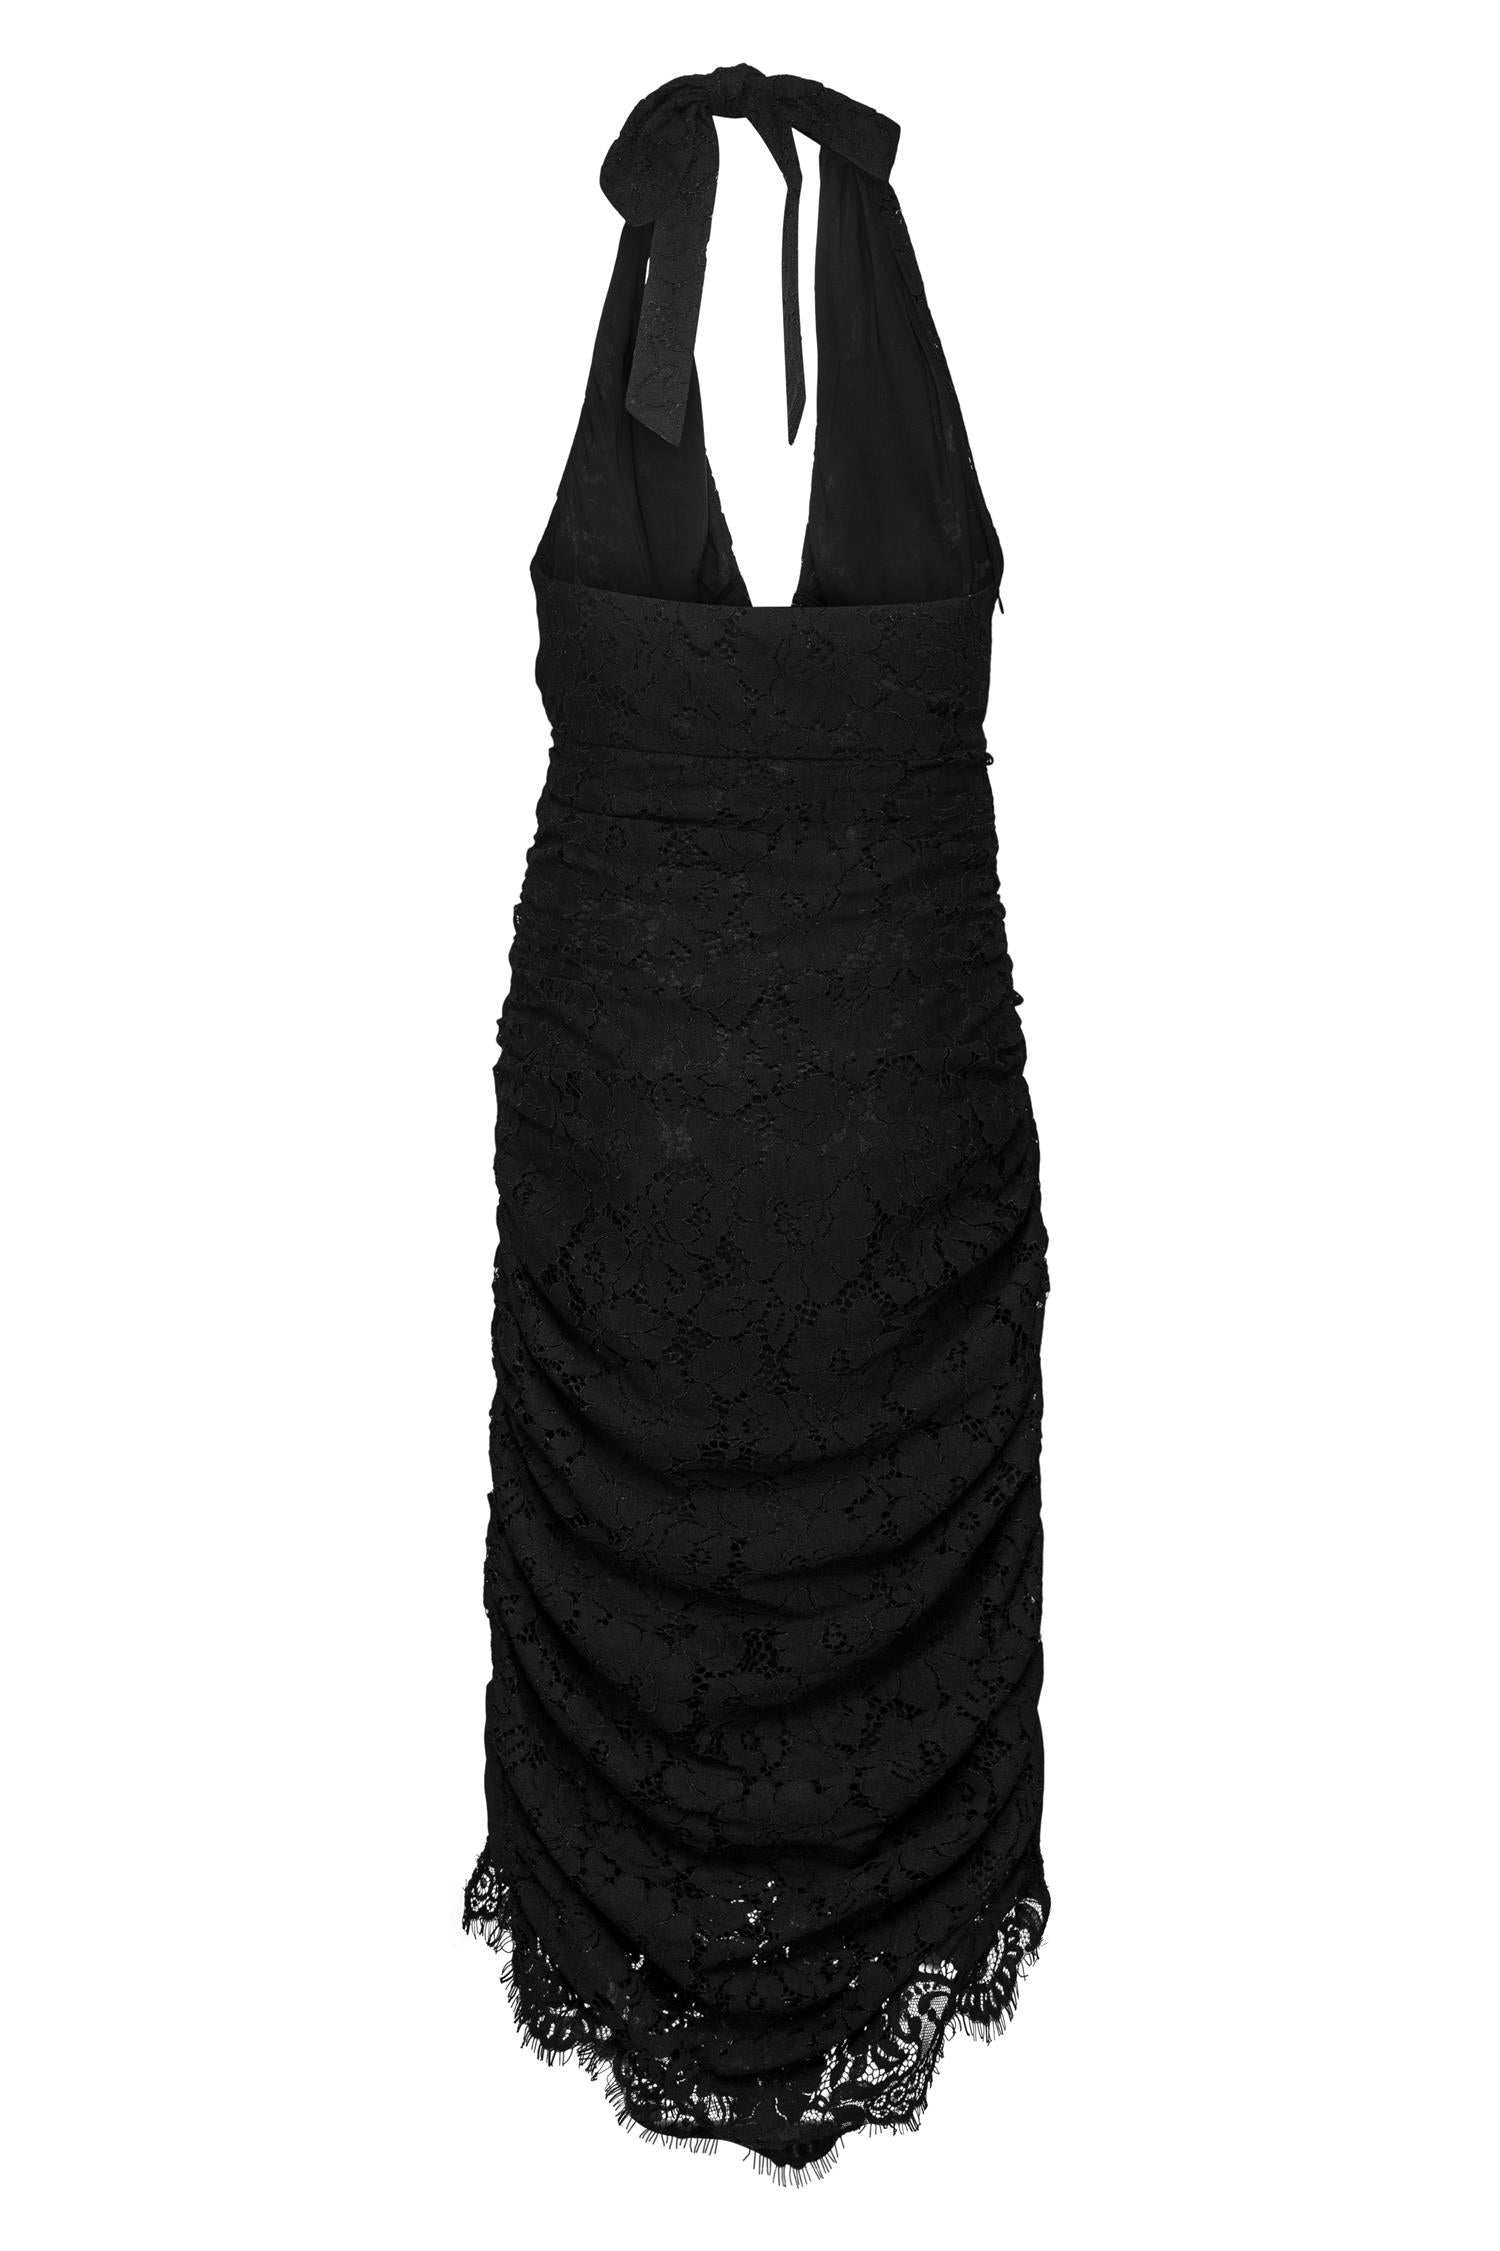 Trinny Midi Dress Black Lace